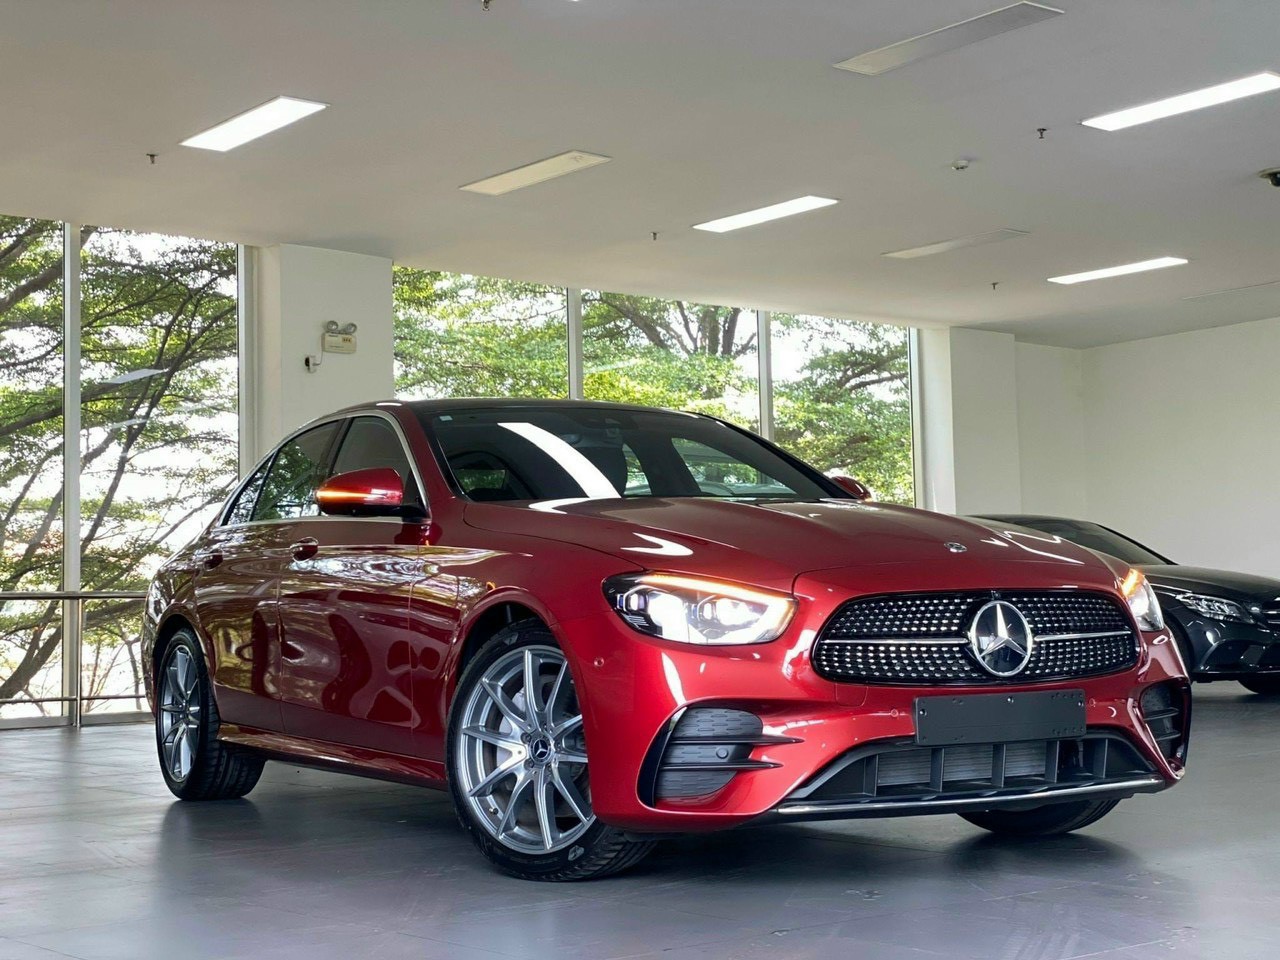 Mercedes E300 AMG 2022 | Màu Đỏ/Đen Giao Liền Huyện Cần Giờ | Trả góp tới 80% | Quang Mercedes Phú Mỹ Hưng